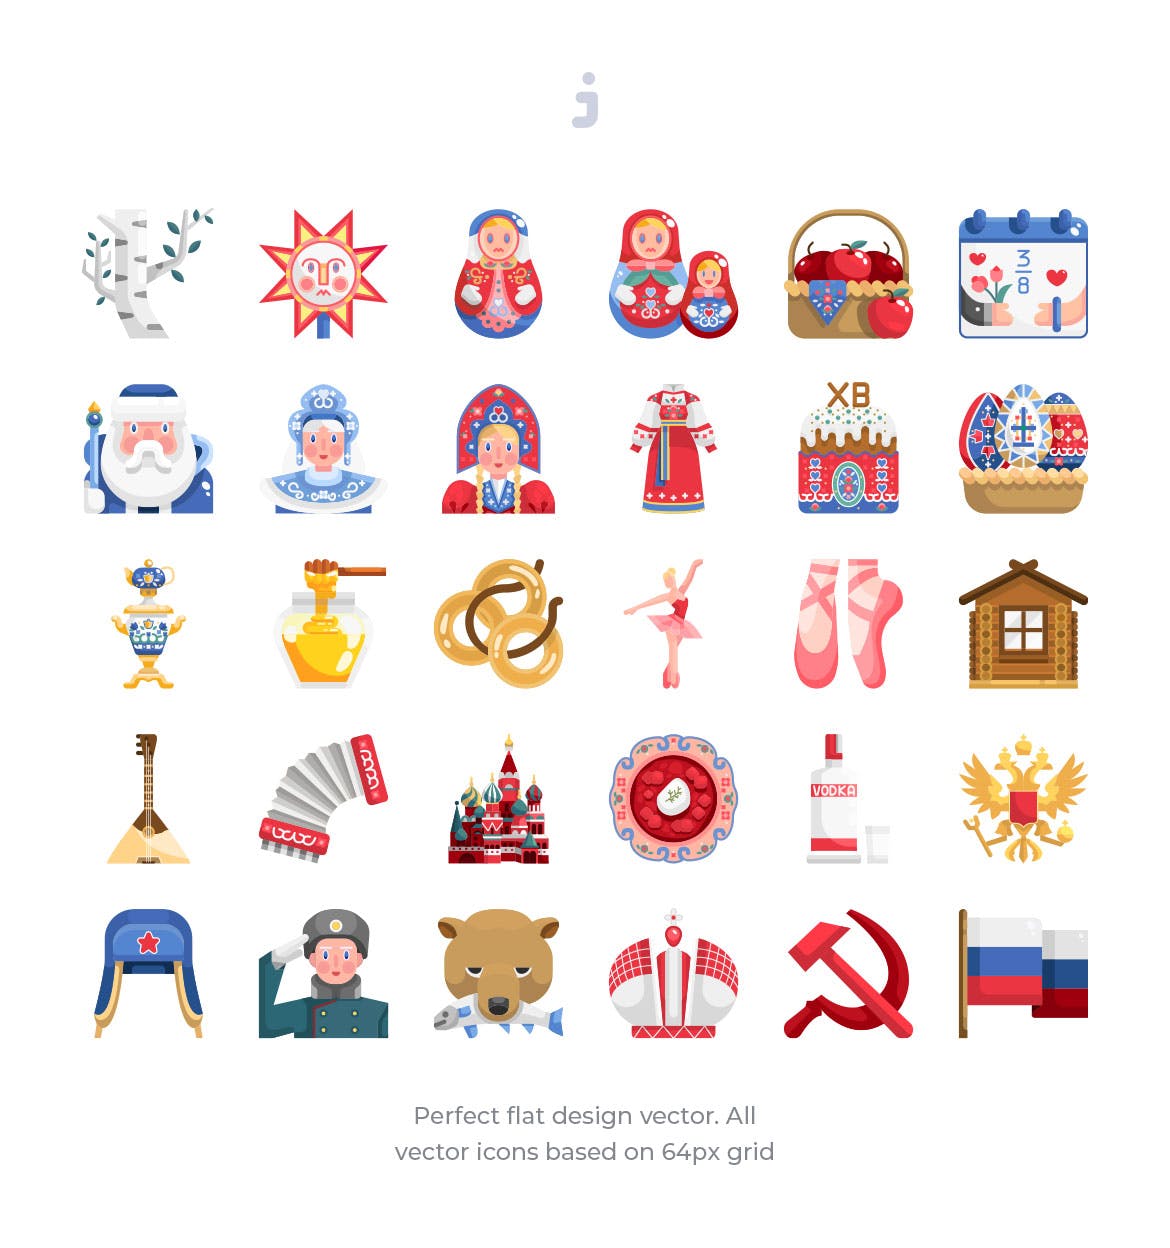 30枚扁平设计风格俄罗斯民族元素矢量蚂蚁素材精选图标 30 Russia Element Icons – Flat插图(1)